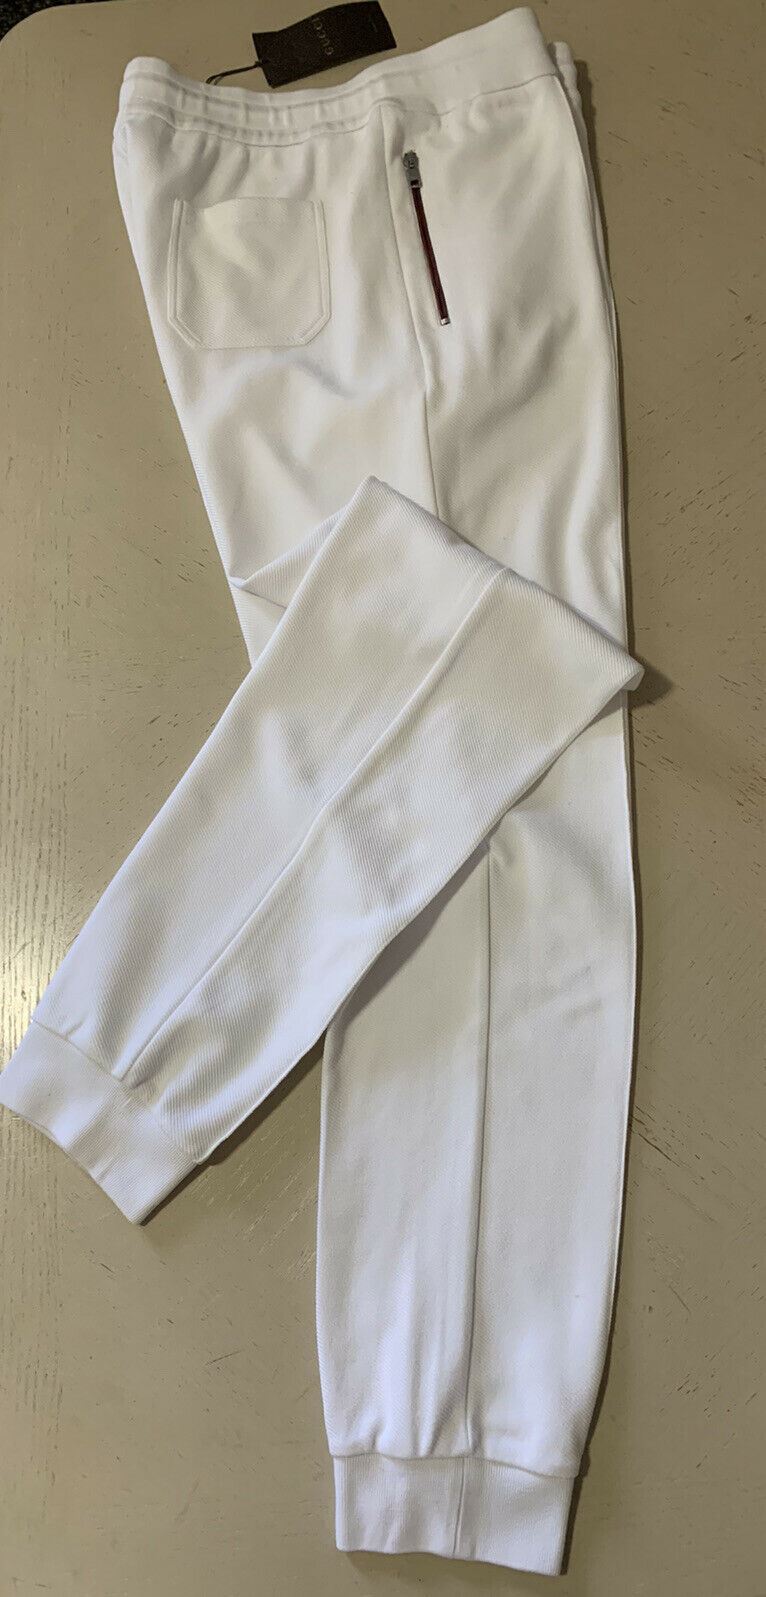 Мужские спортивные штаны Gucci белого цвета, размер XXL, 1245 долларов, сделано в Италии.